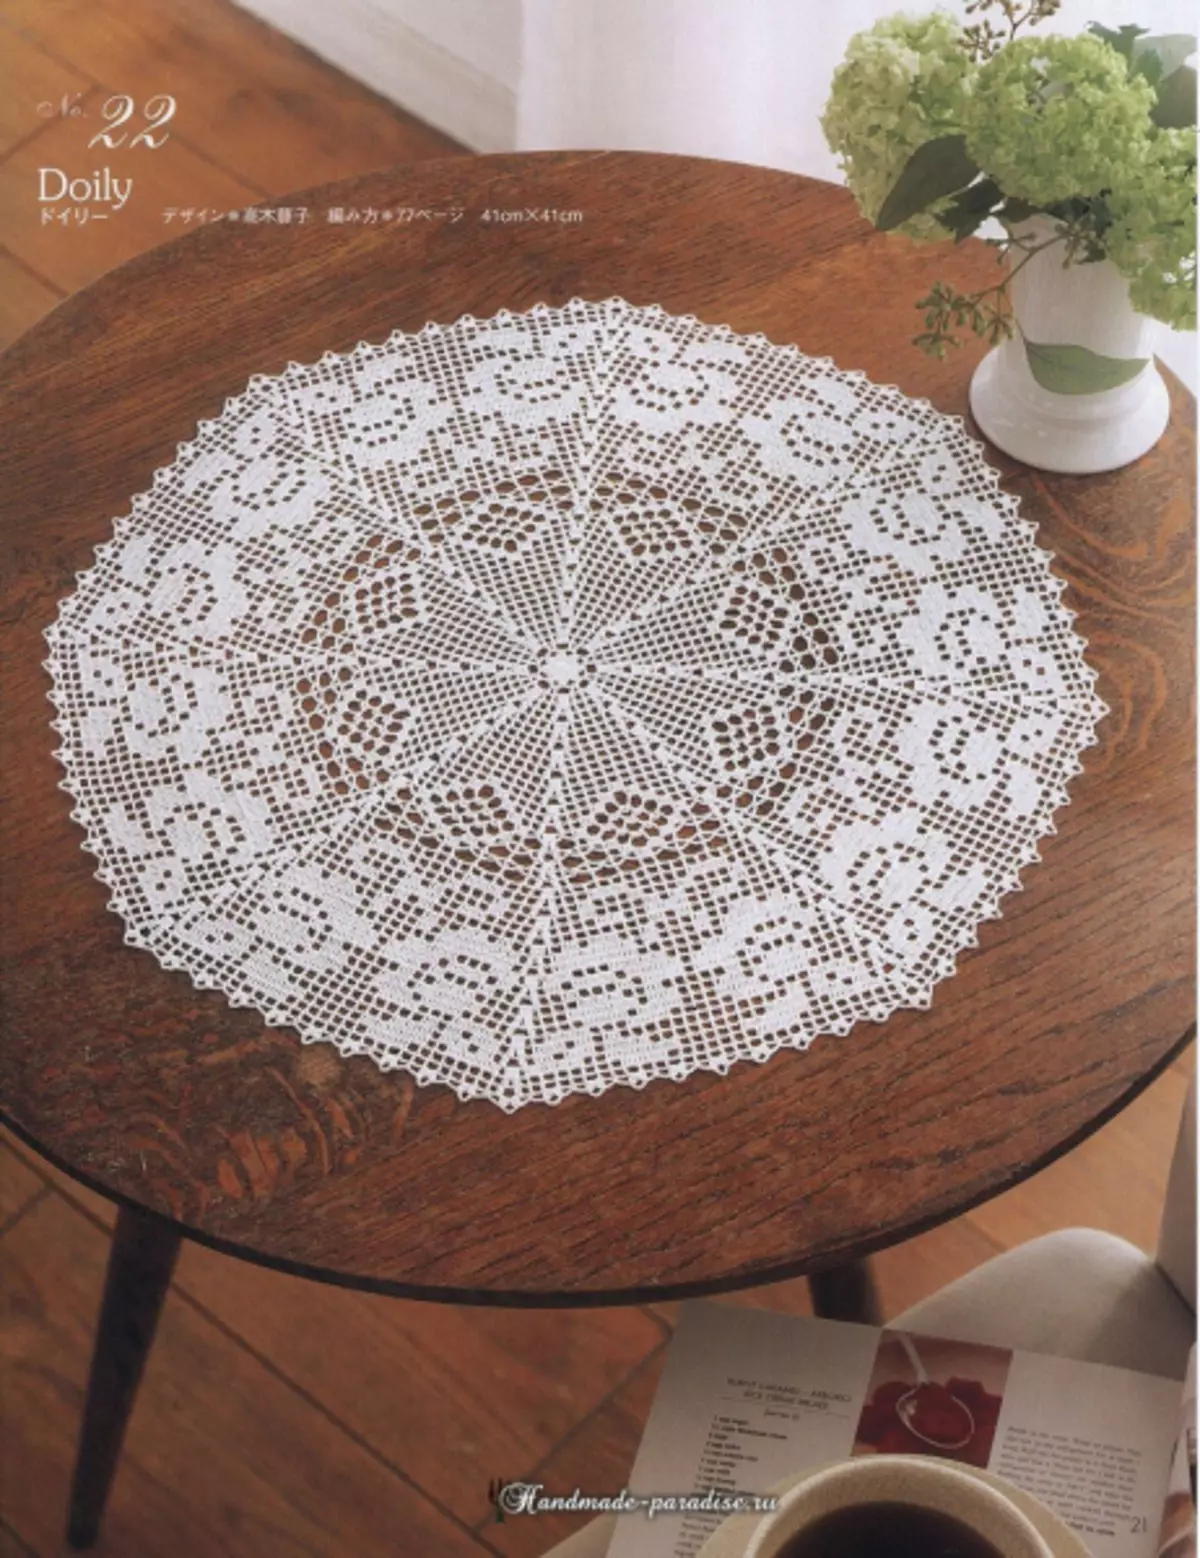 Majalah Lace Crochet Lace 2019 - Napkins lan TreCalloth Crochet